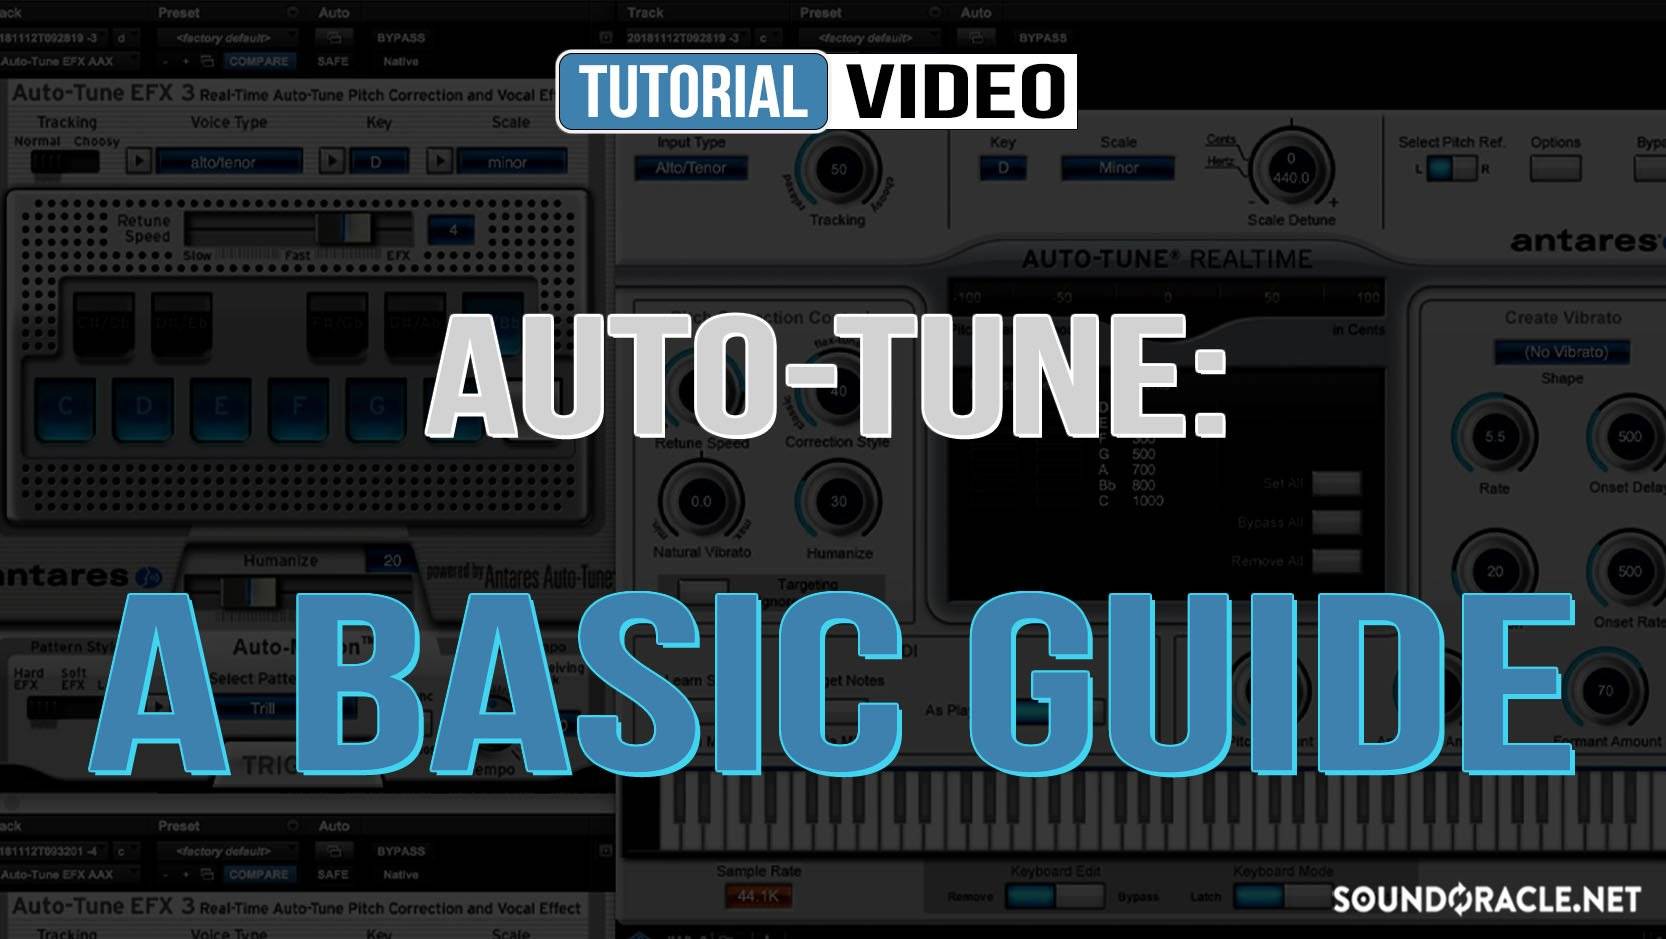 Auto-Tune: A Basic Guide